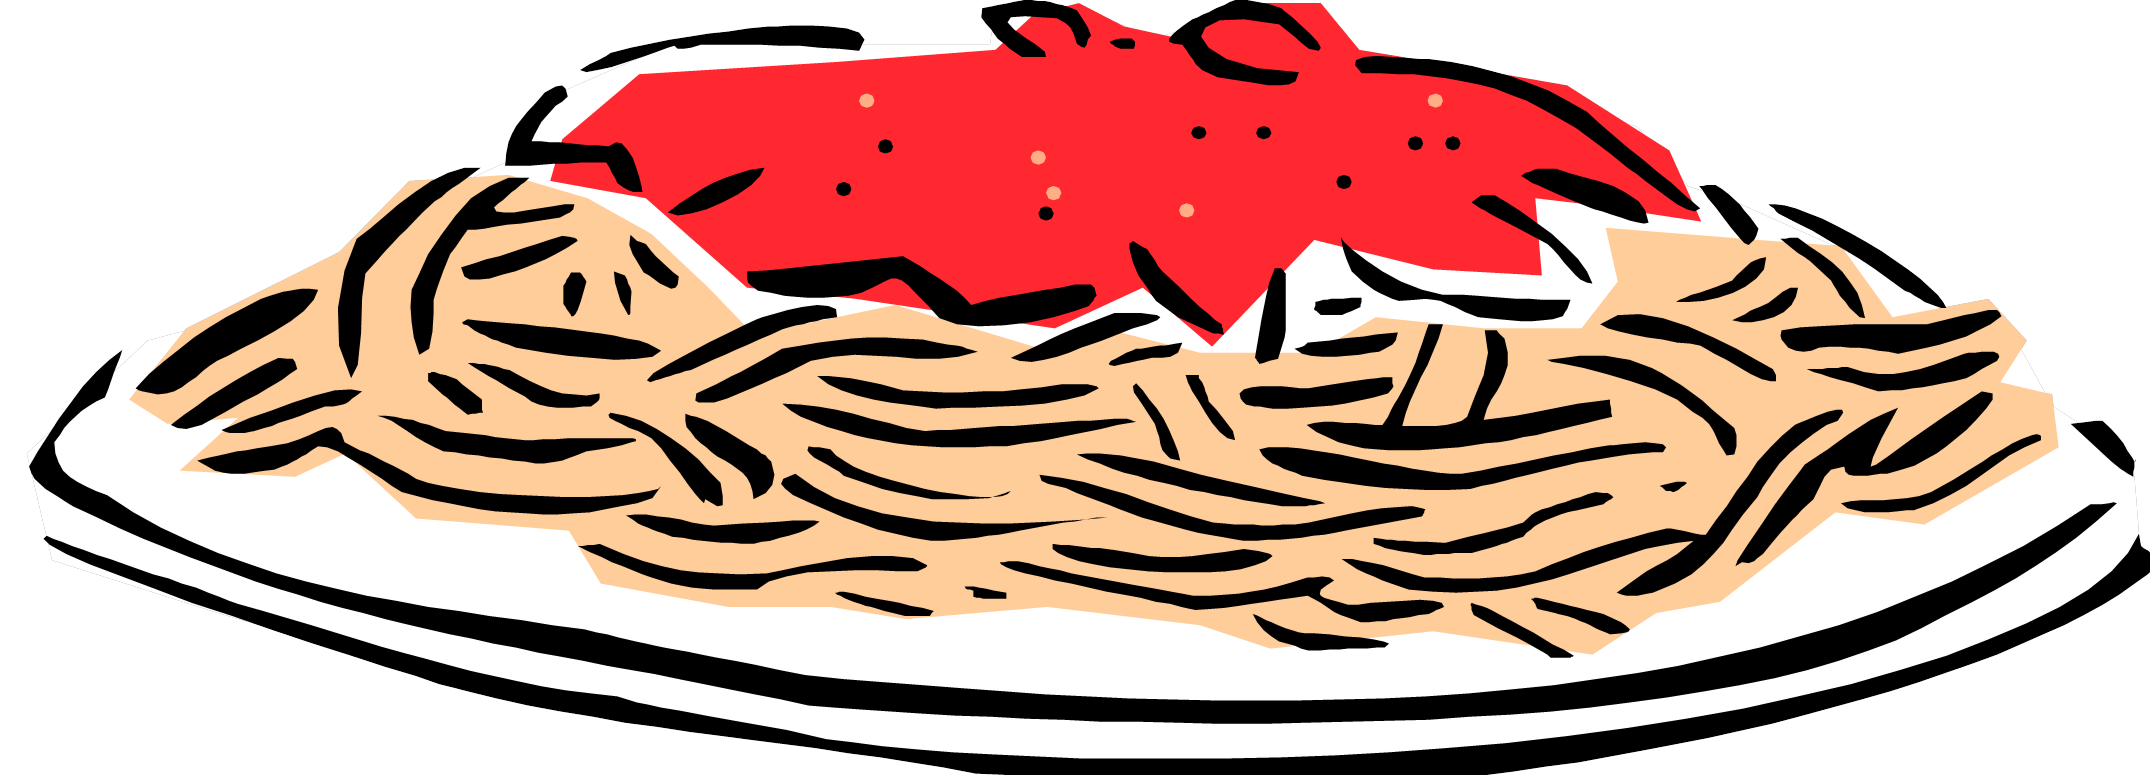 Clip art of pasta 